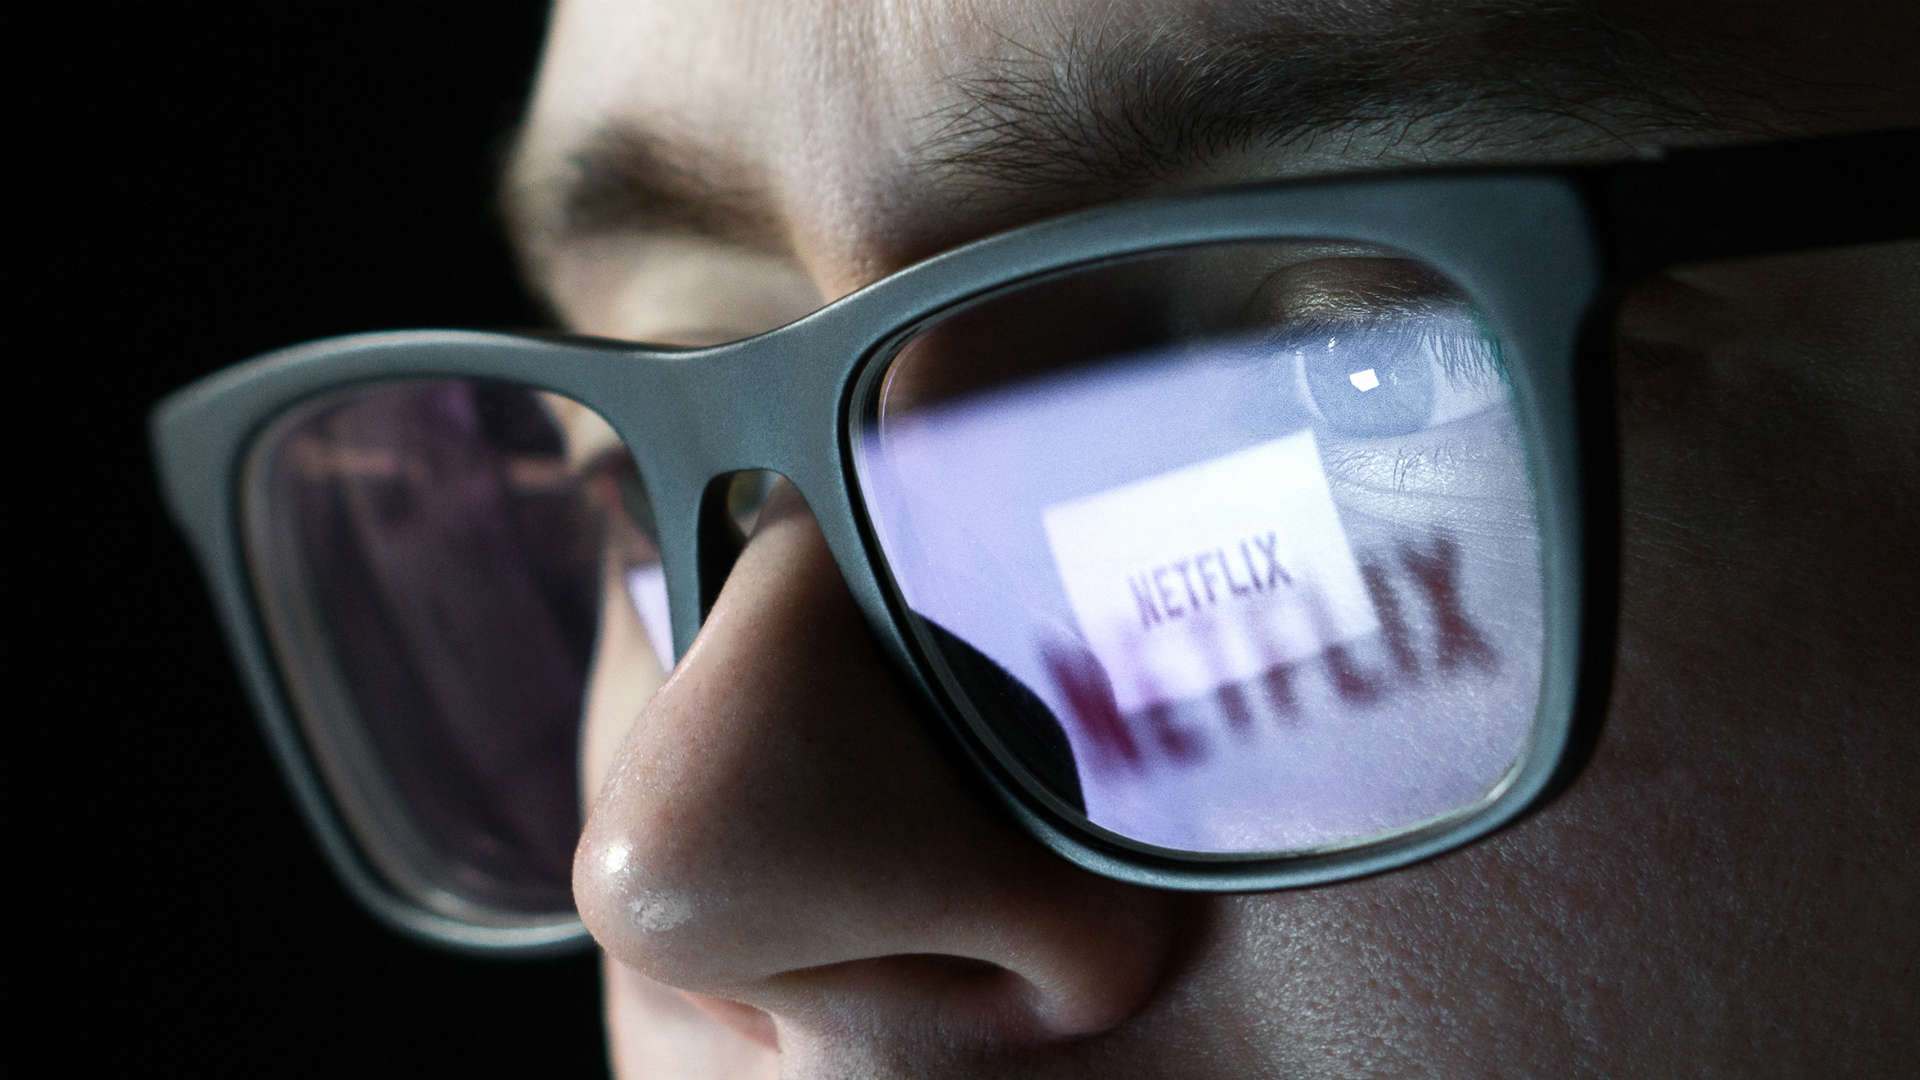 Netflix and YouTube coming soon to Tesla